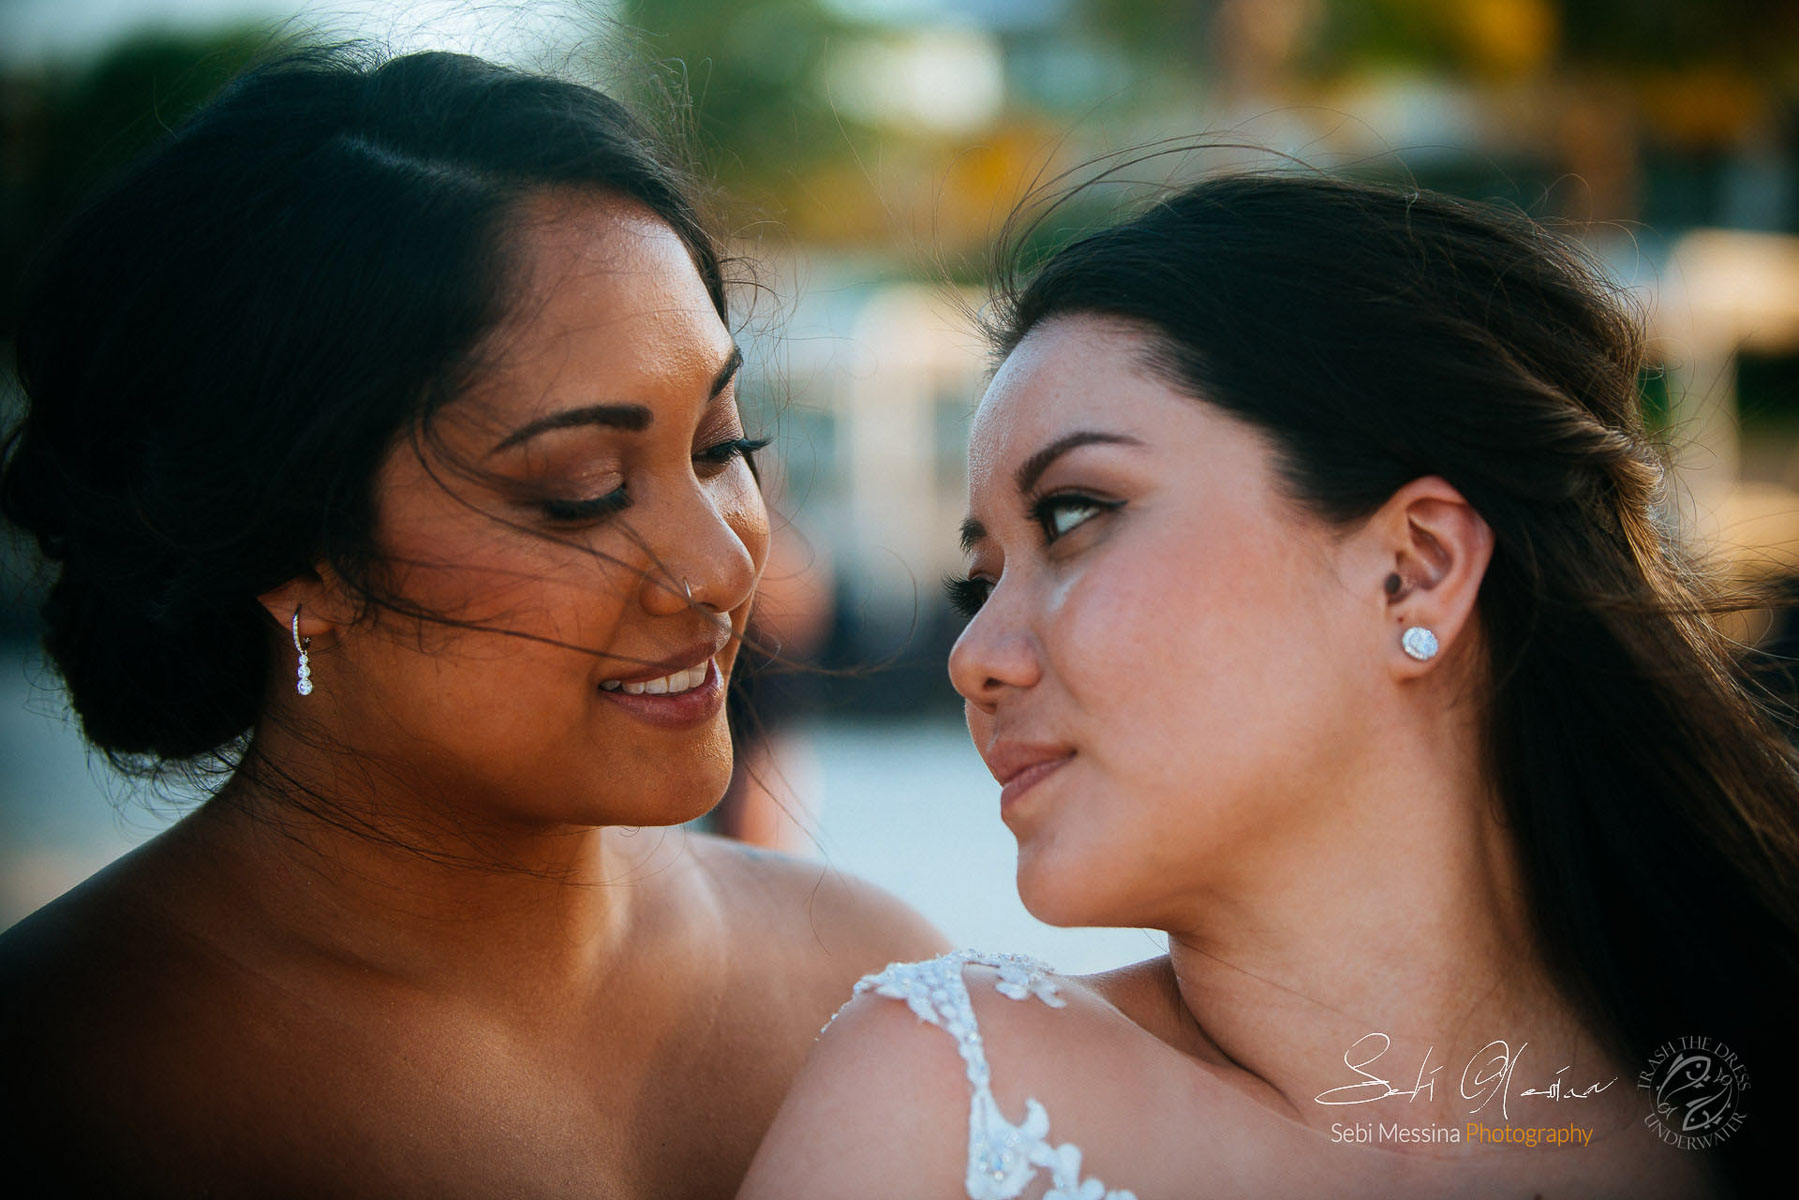 Two brides - Royalton Cancun - Same-sex wedding Mexico - Sebi Messina Photography